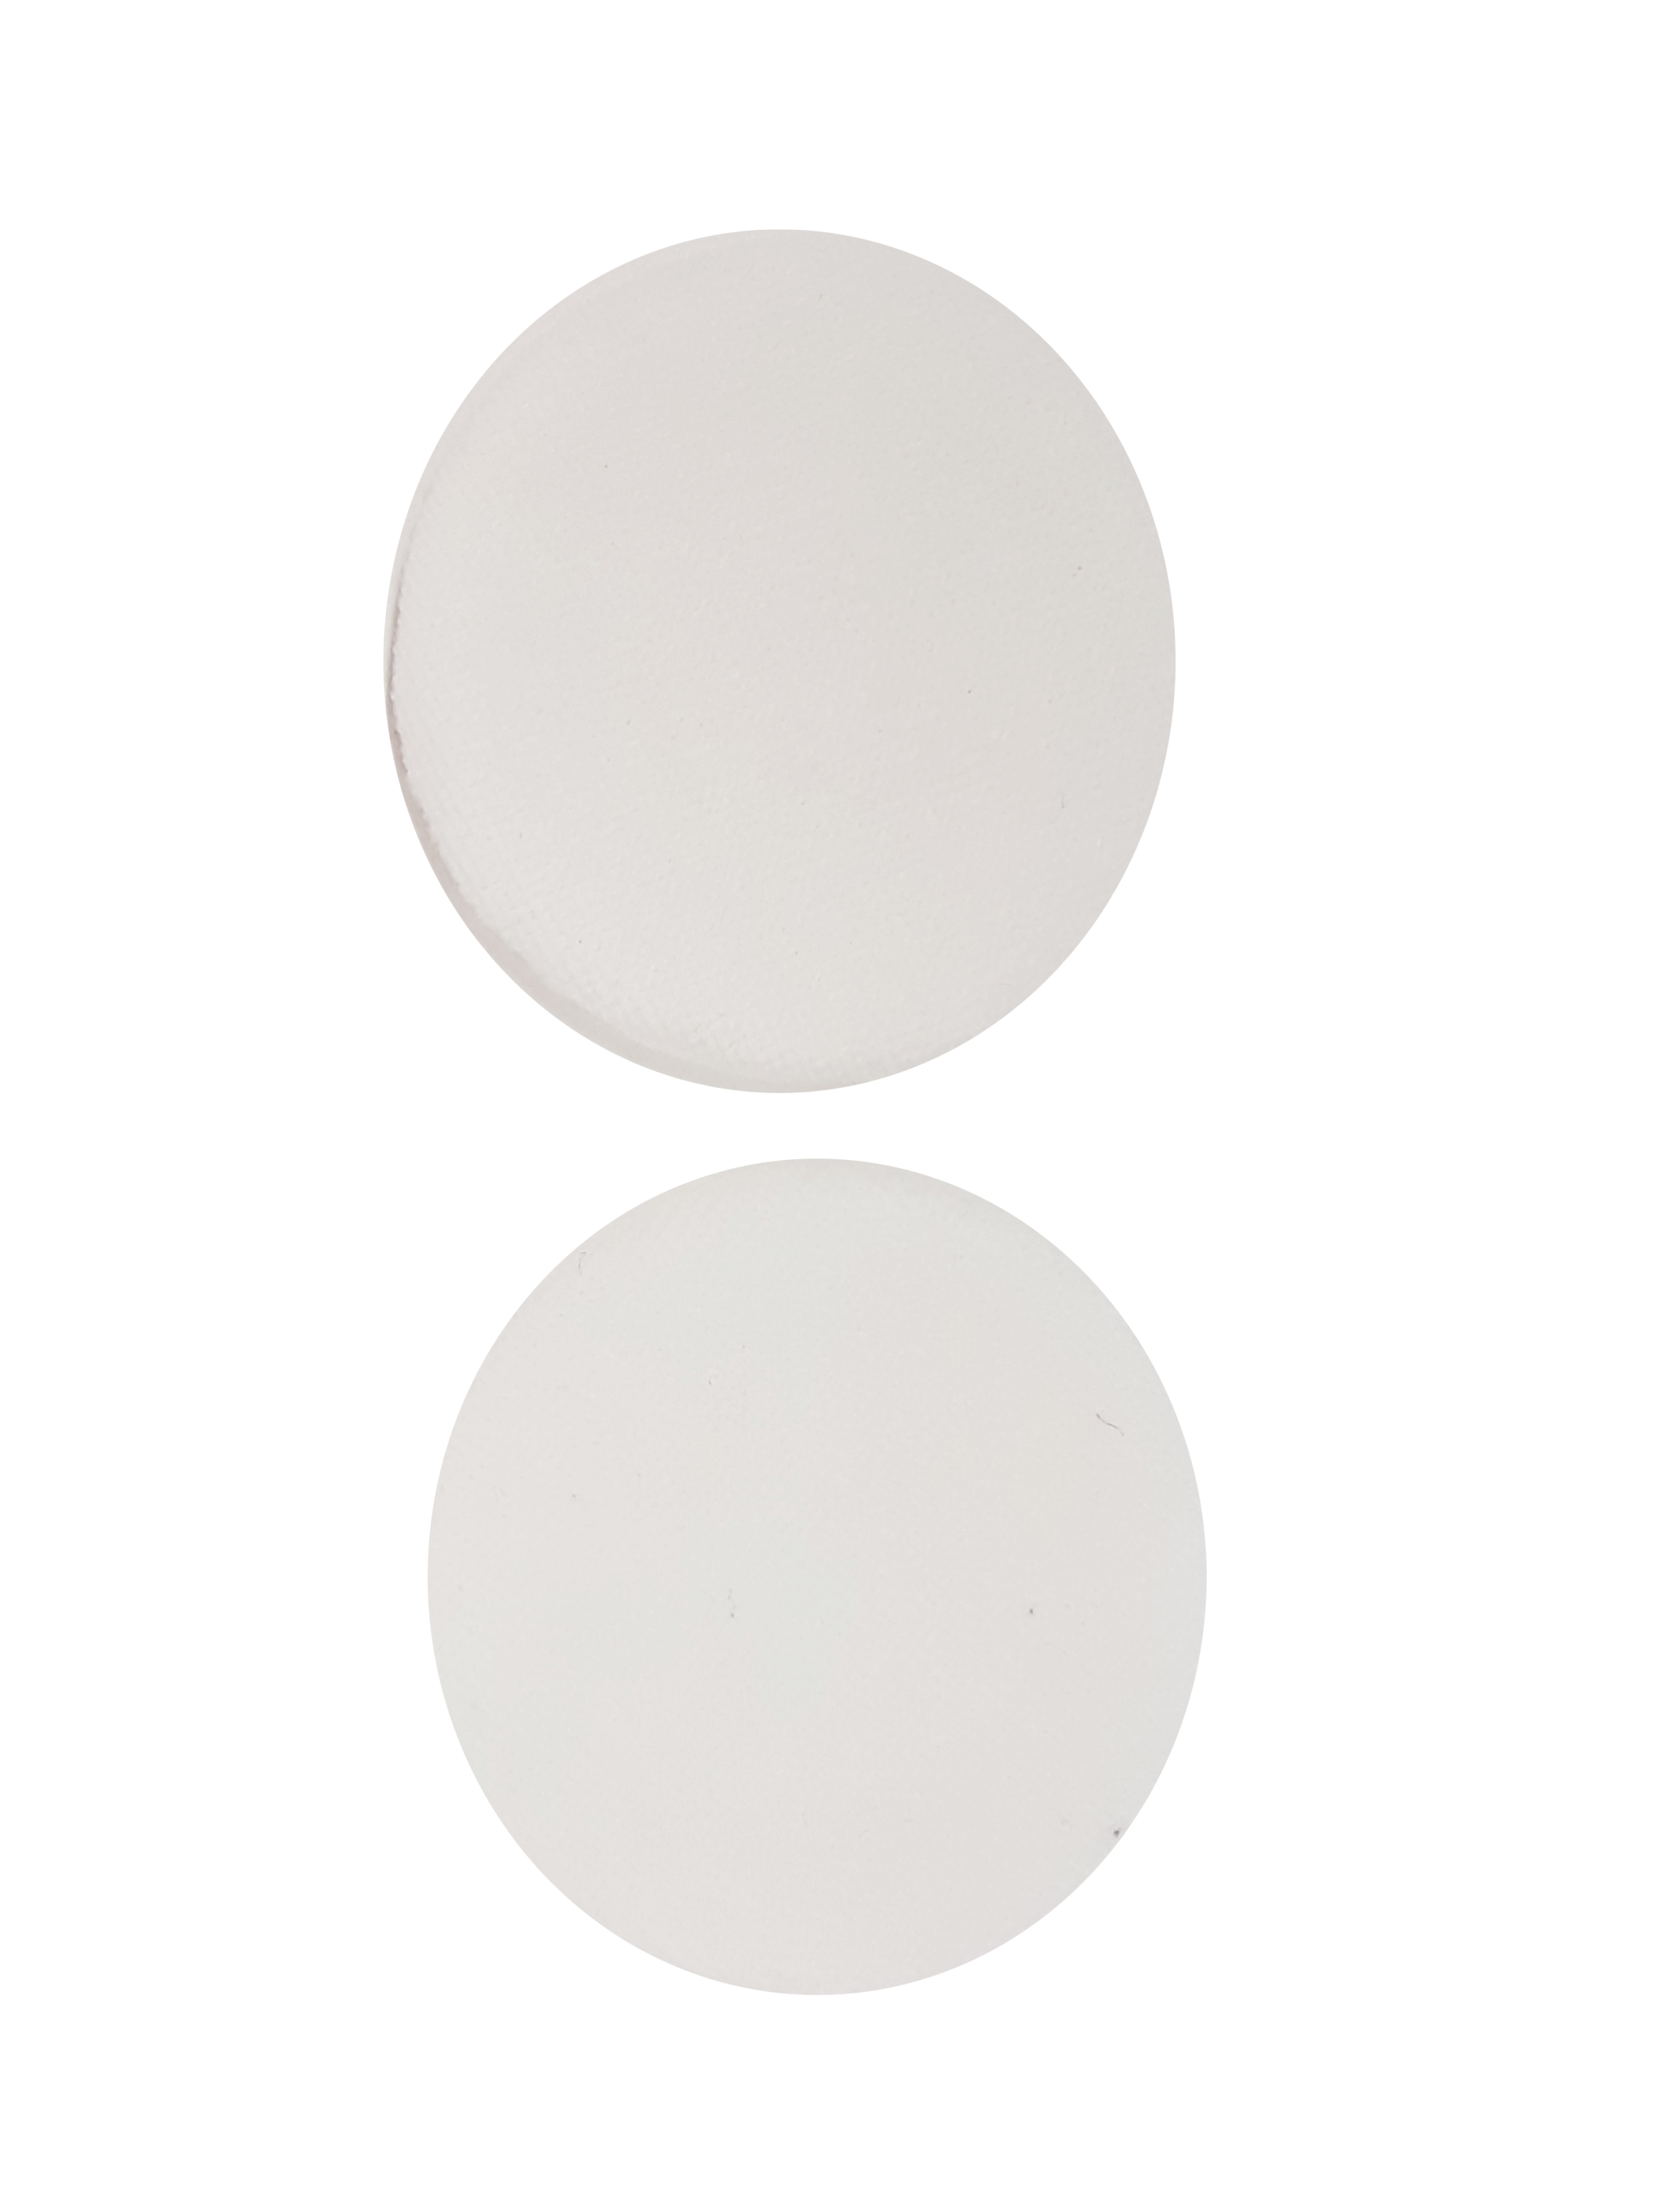 Пуховки для макияжа, 2 шт, d=6 см, белый  (AW-050)